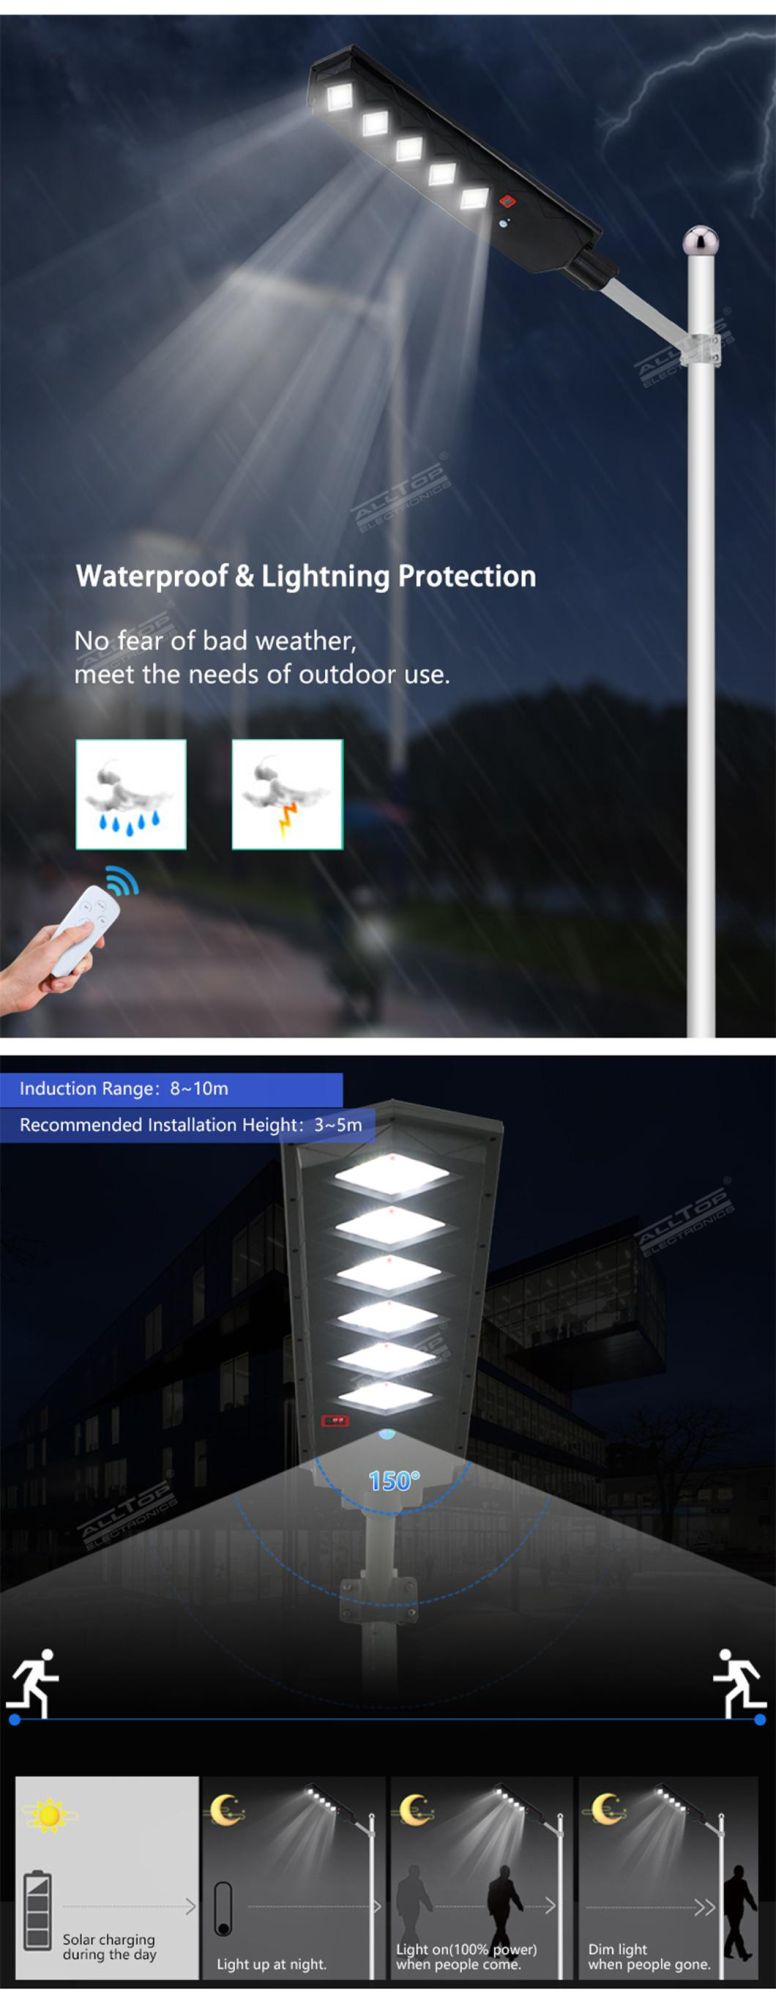 Alltop High Lumen Waterproof IP65 50W 100W 150W 200W 250W 300W Outdoor All in on LED Solar Street Lamp